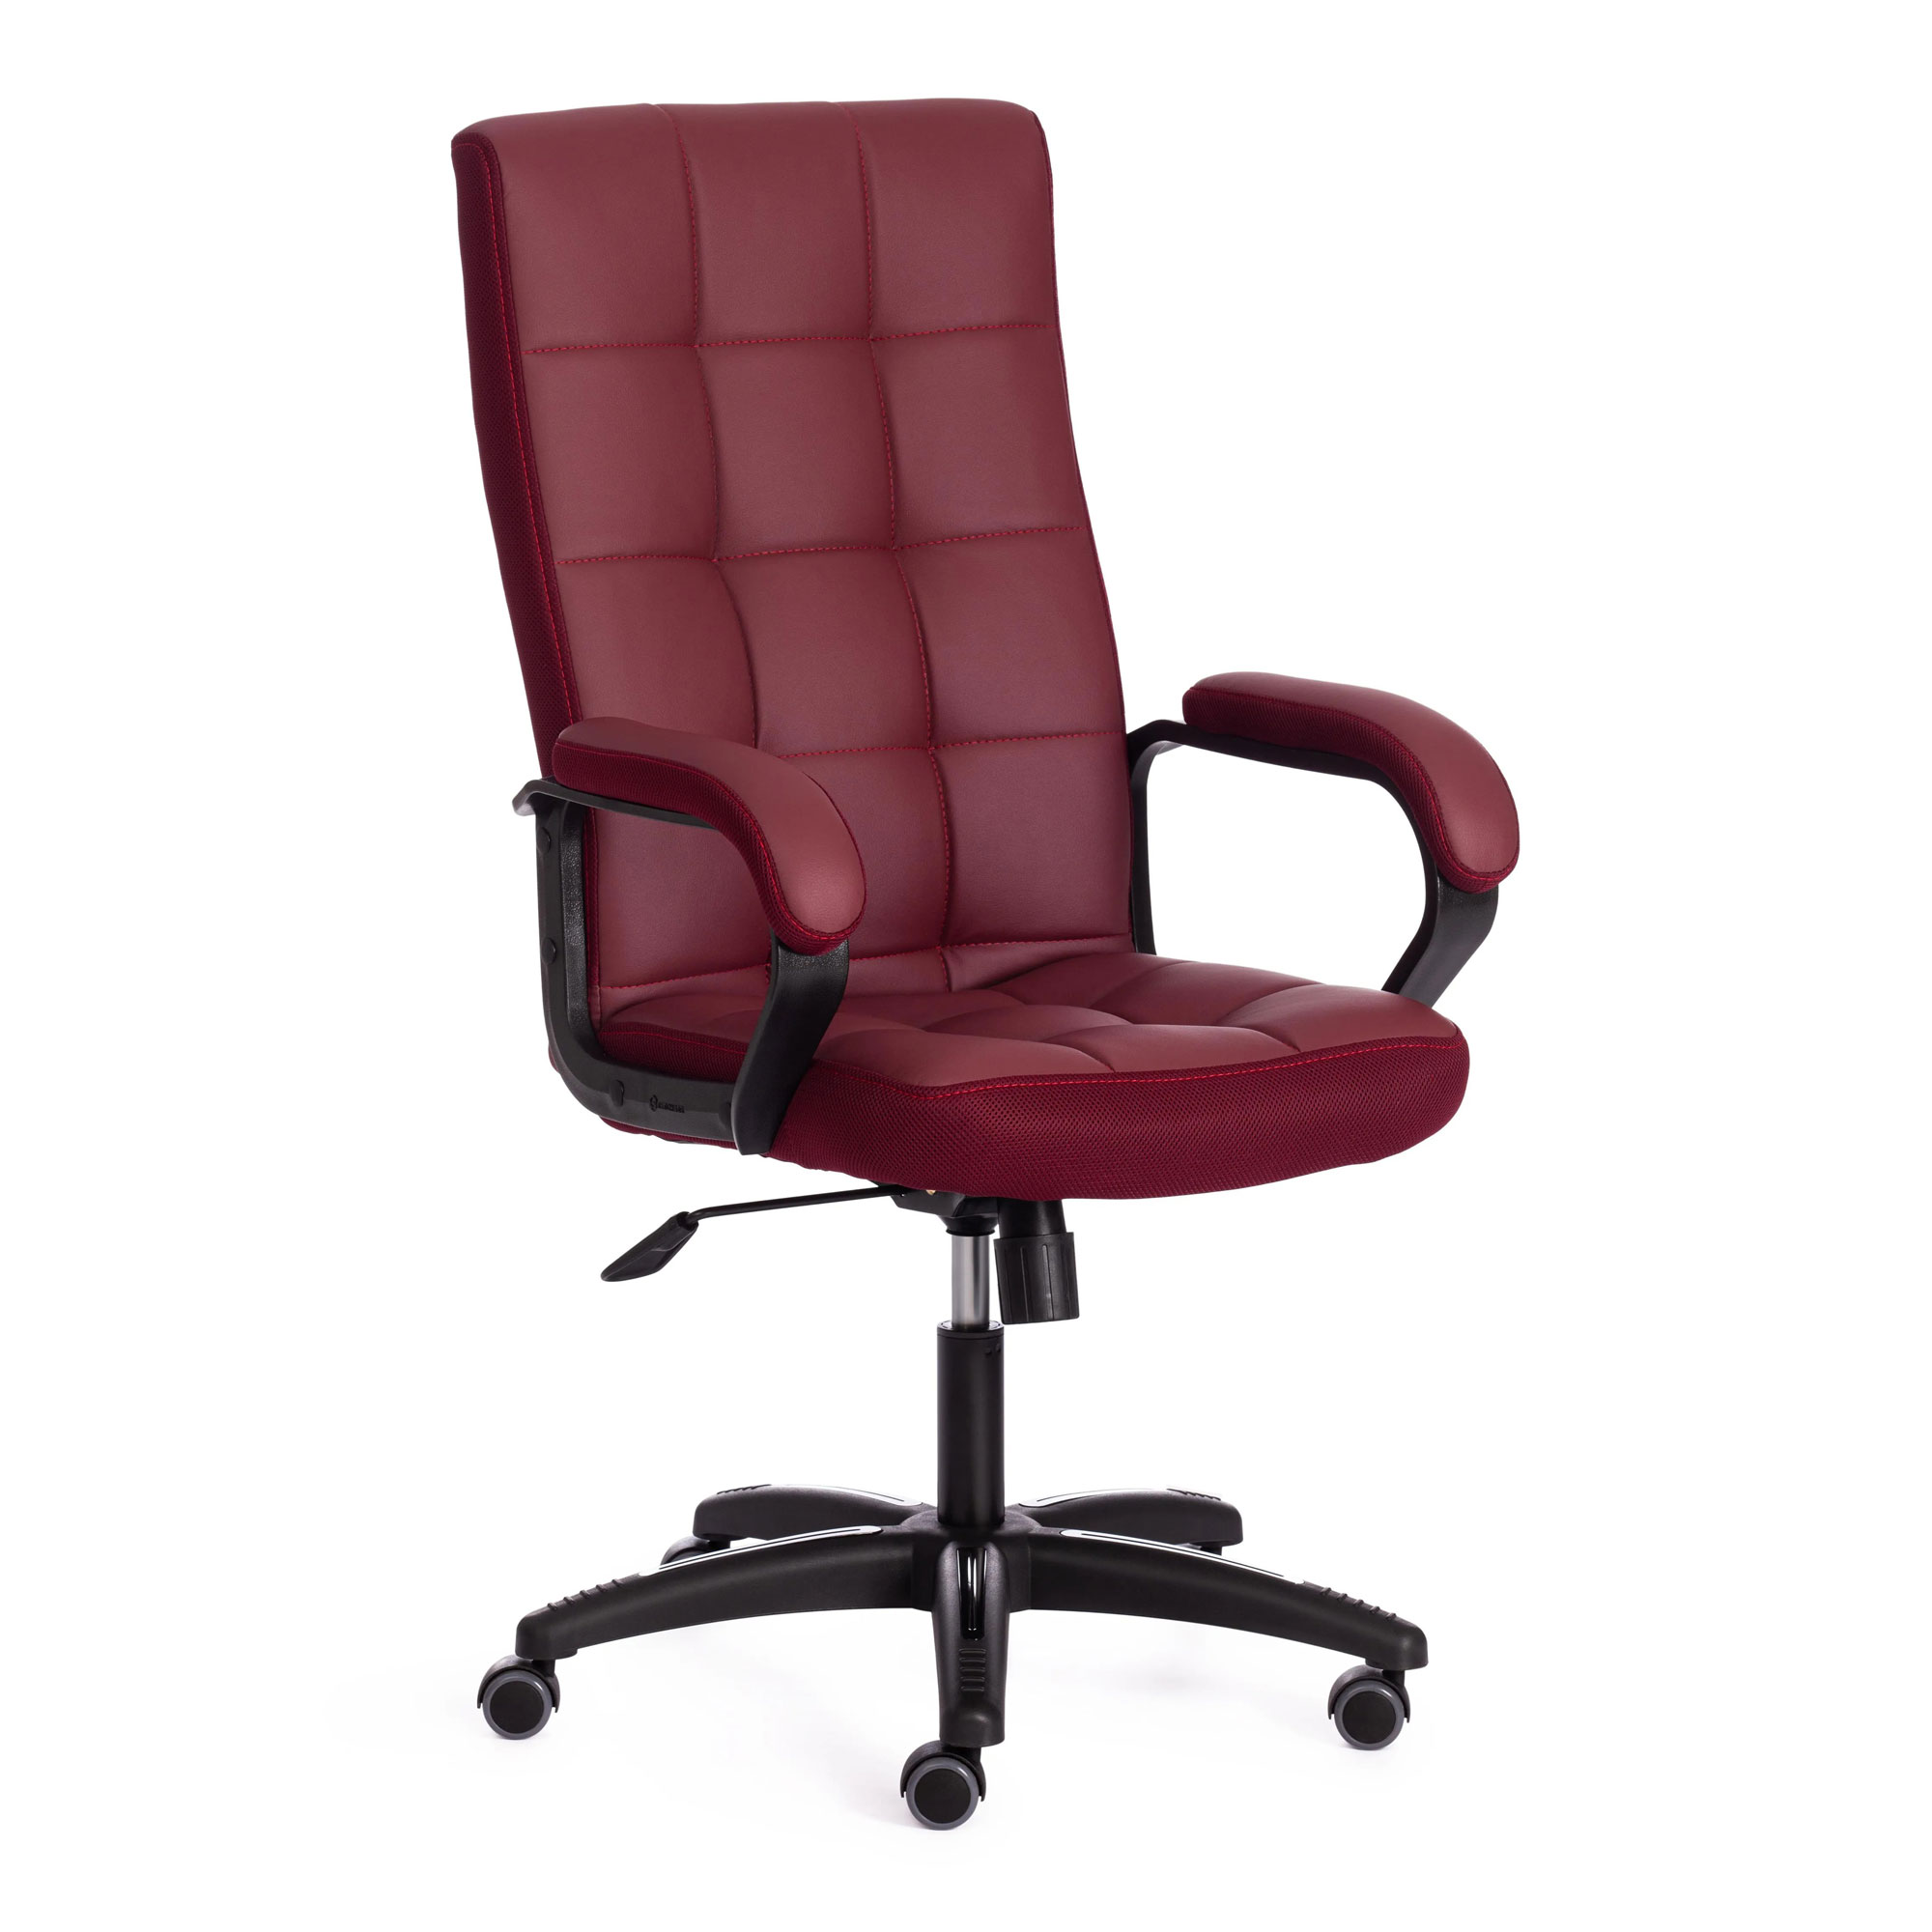 Кресло компьютерное TC искусственная кожа бордовое 61х47х126 см кресло компьютерное tc driver искусственная кожа чёрное 55х49х126 см